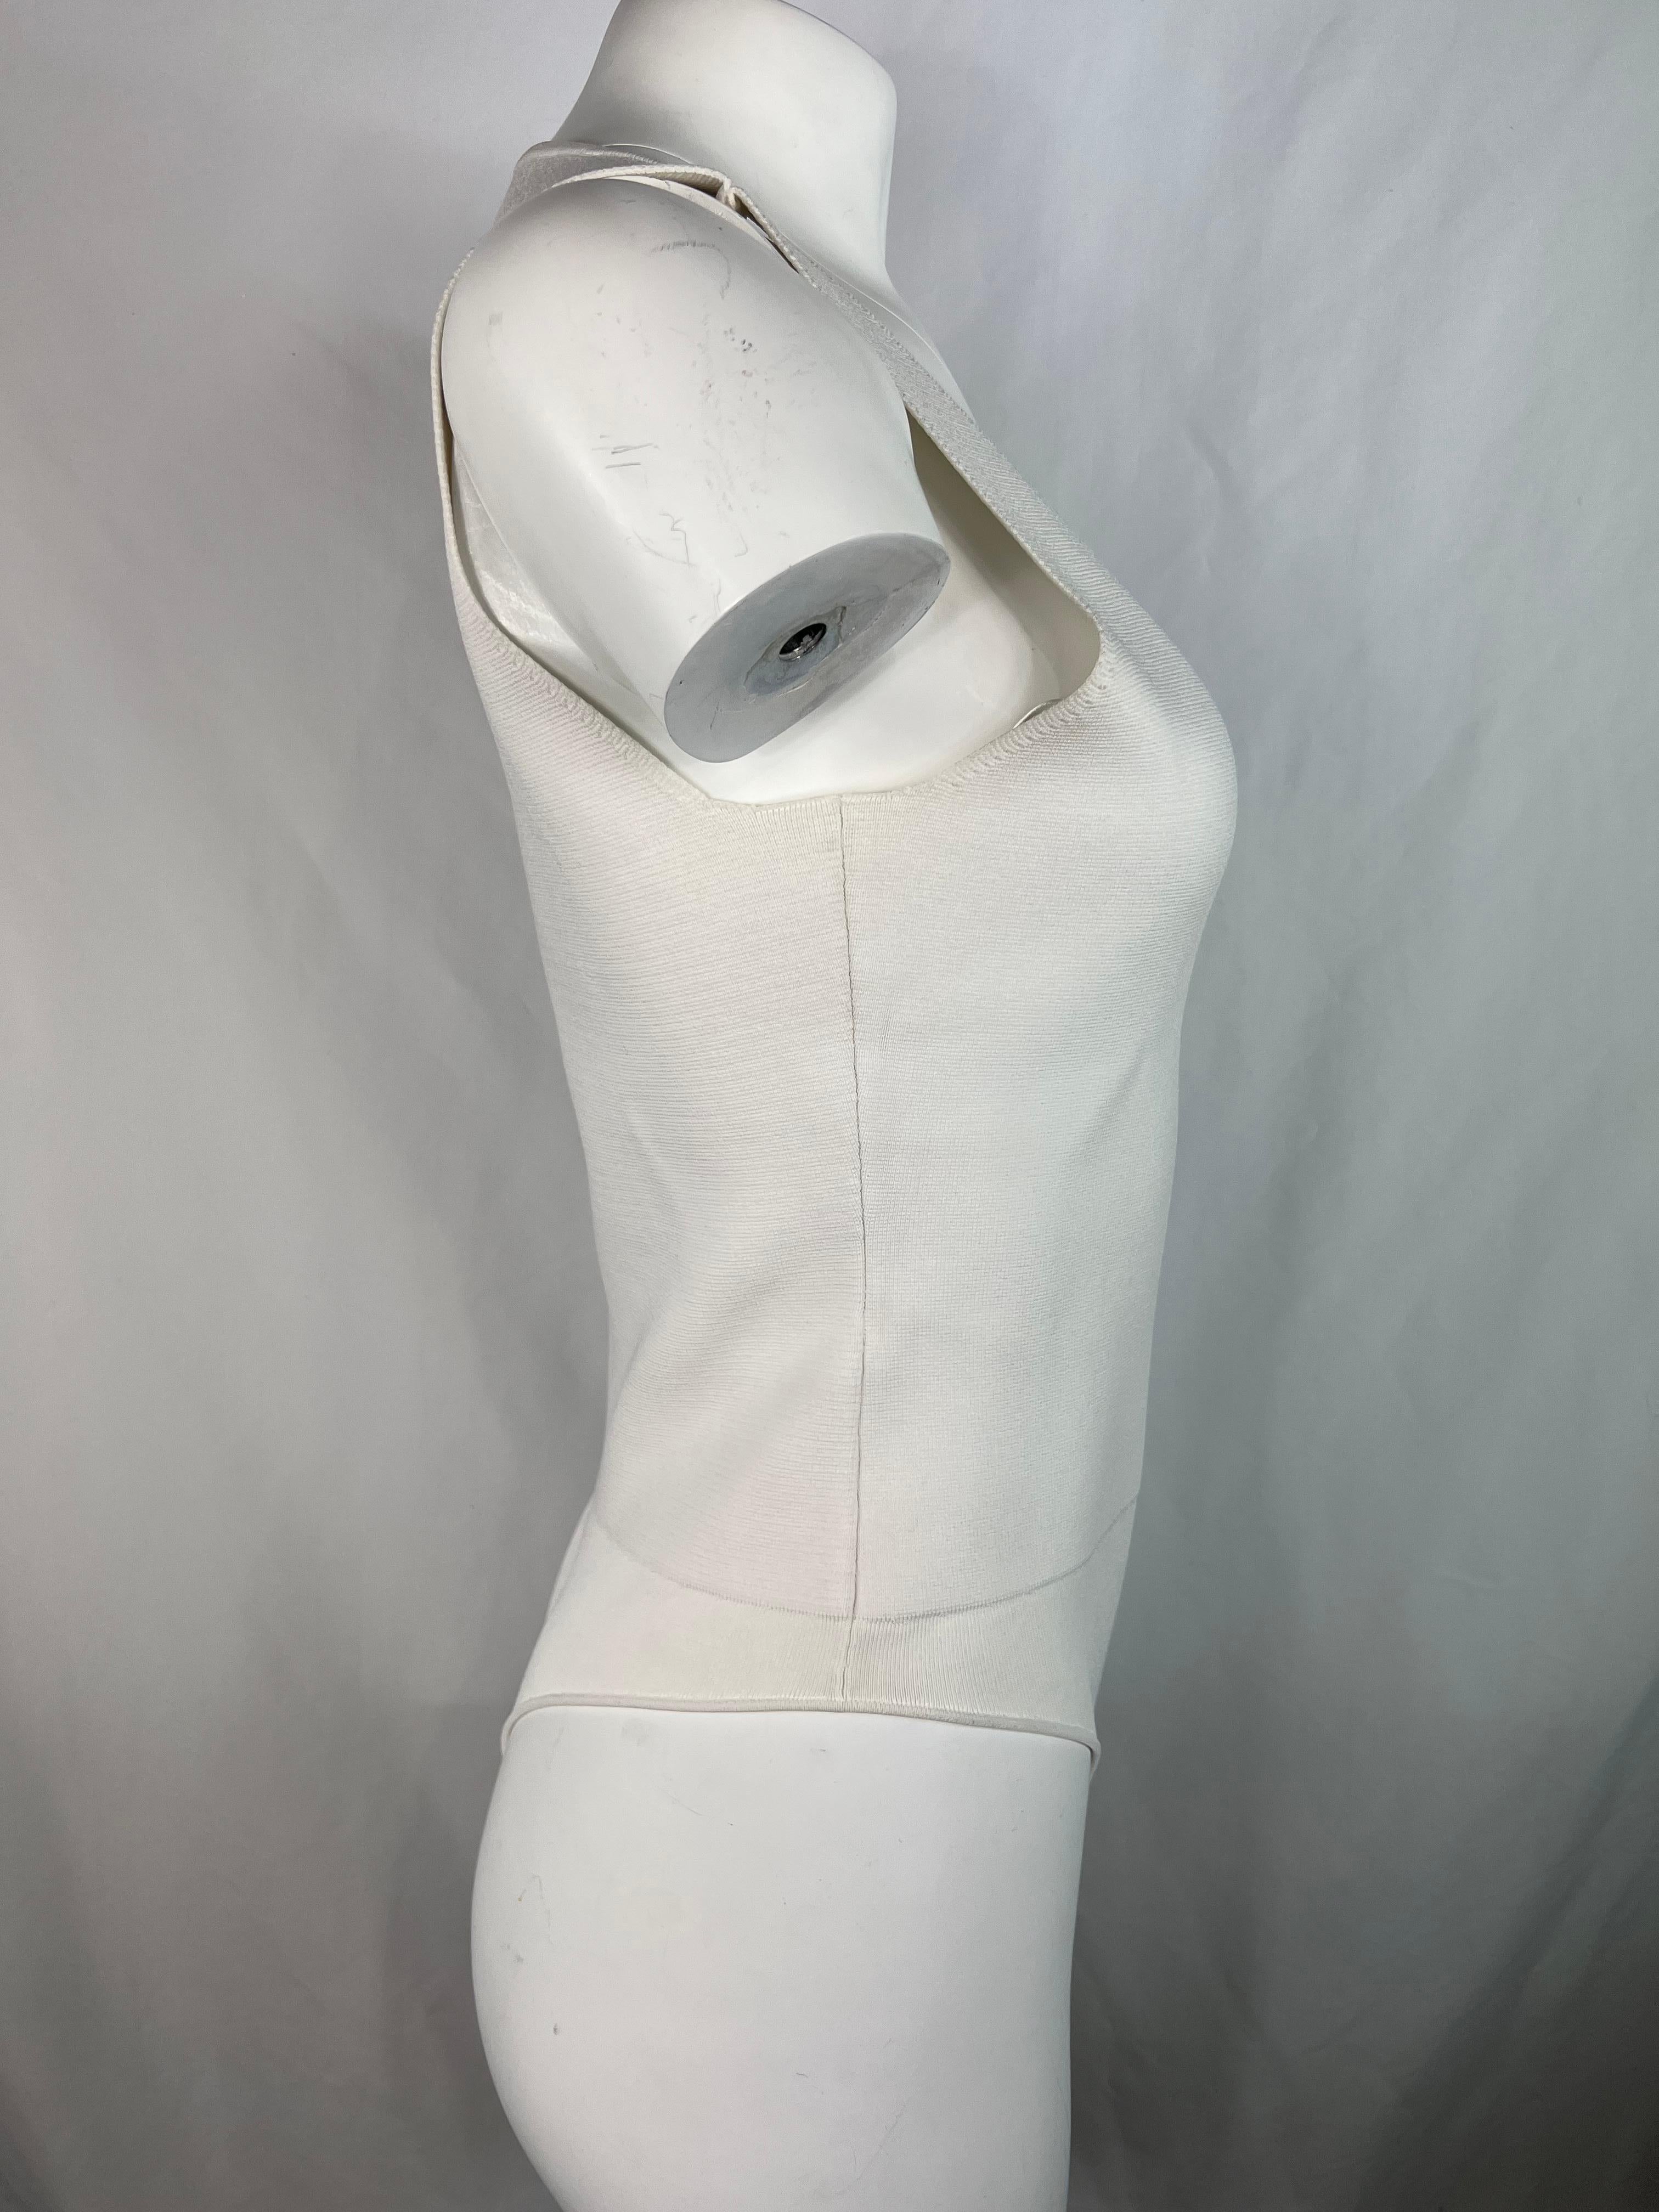 Einzelheiten zum Produkt:

Der Bodysuit hat einen tiefen V-Ausschnitt, ist ärmellos und hat einen String als Unterteil.